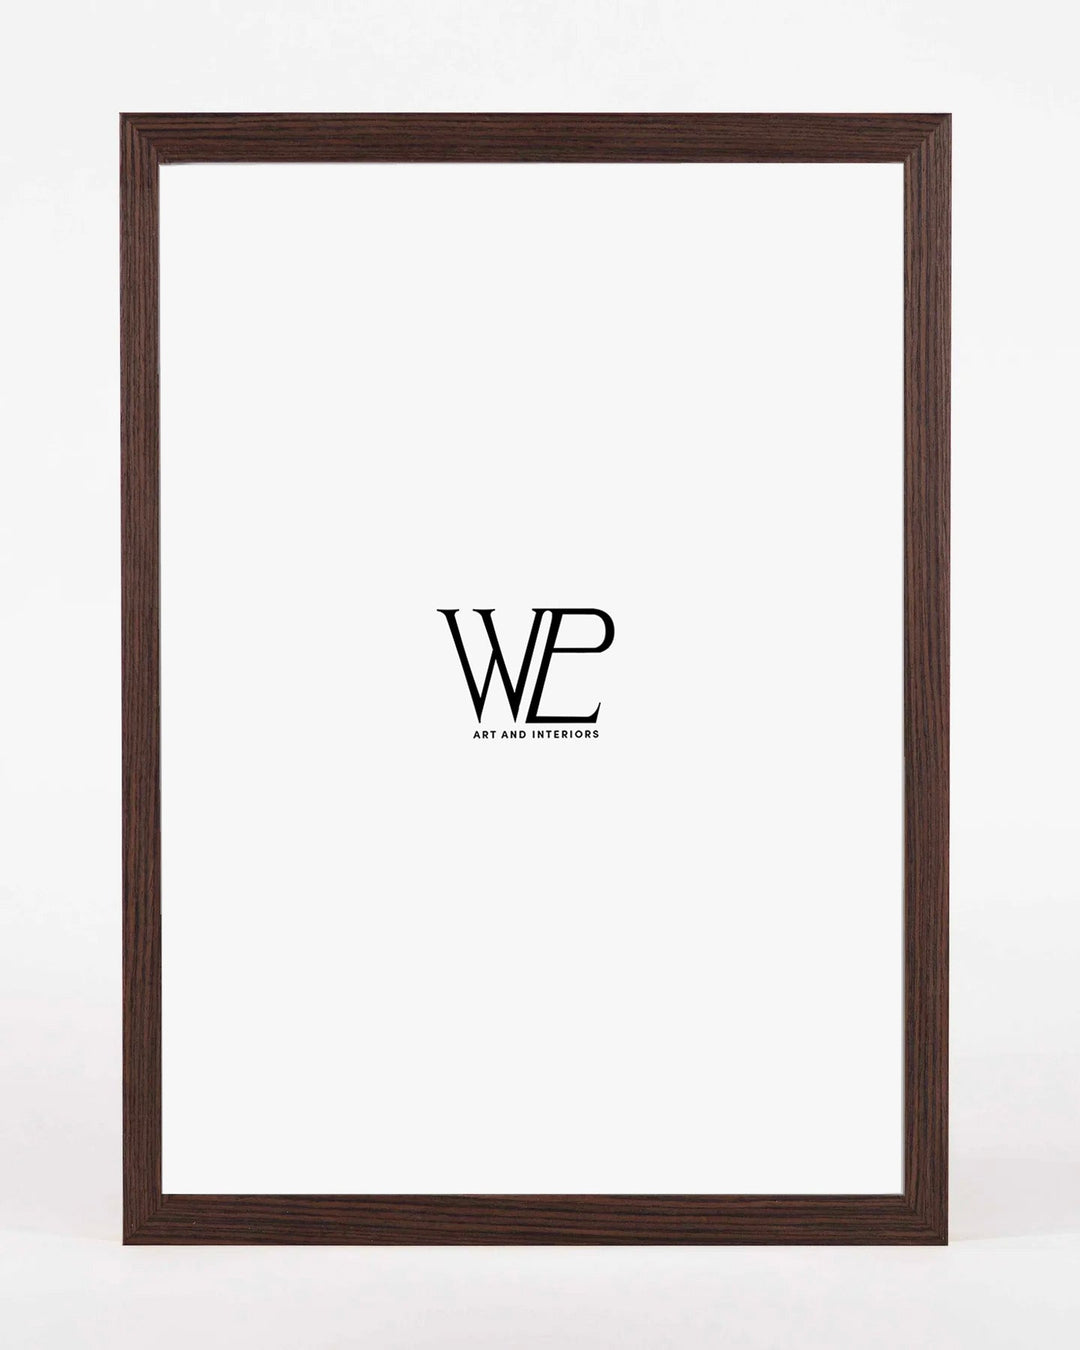 Premium Dark Walnut Picture Frame, 30x40cm Size Photo Frame